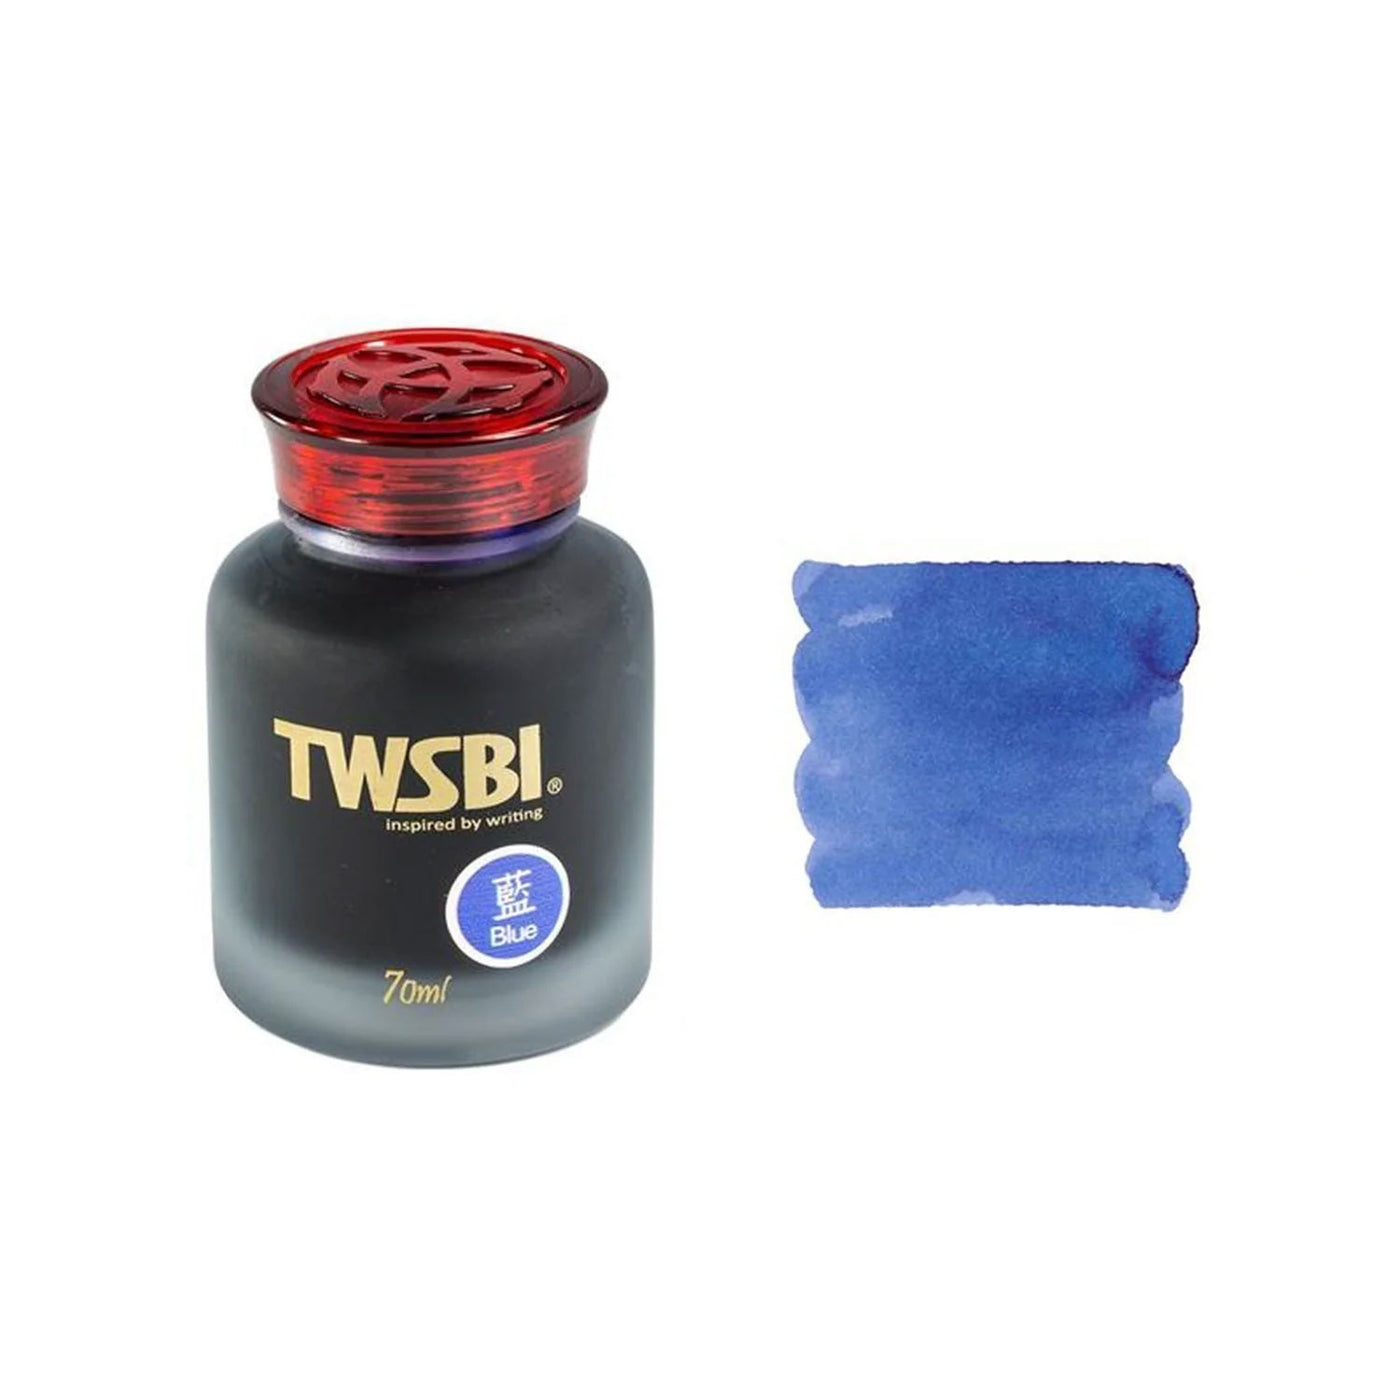 TWSBI Ink Bottle Sapphire Blue - 70ml